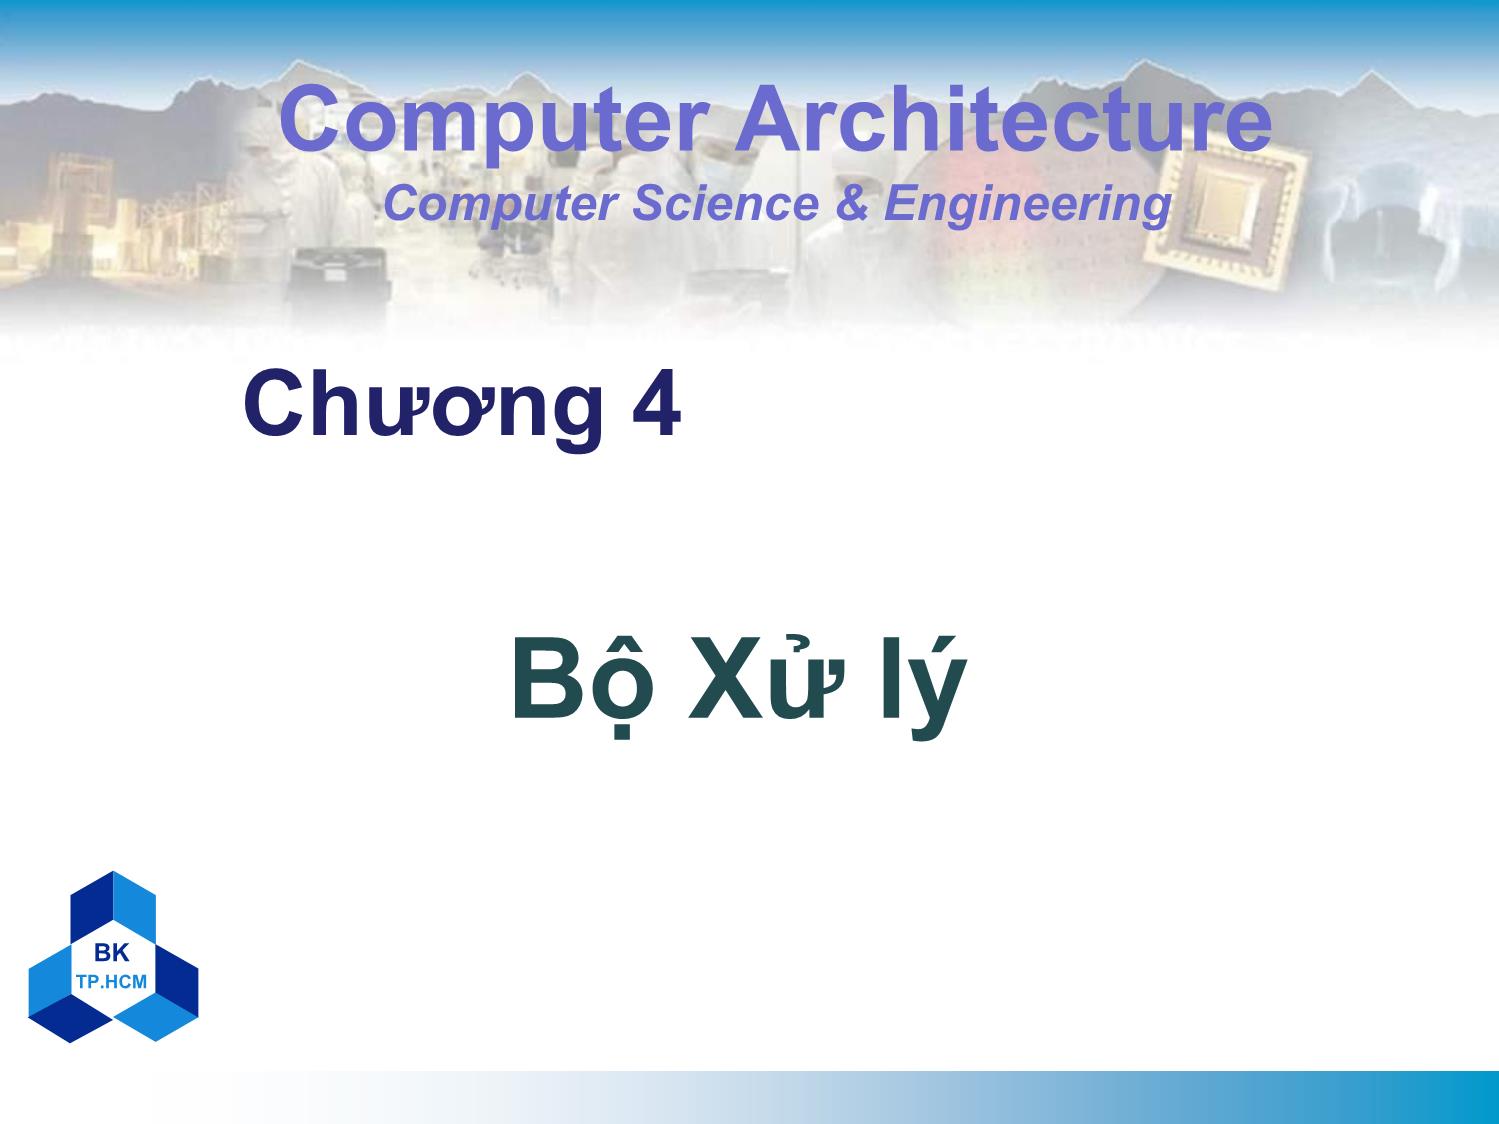 Bài giảng môn Kiến trúc máy tính - Chương 4: Bộ xử lý trang 1